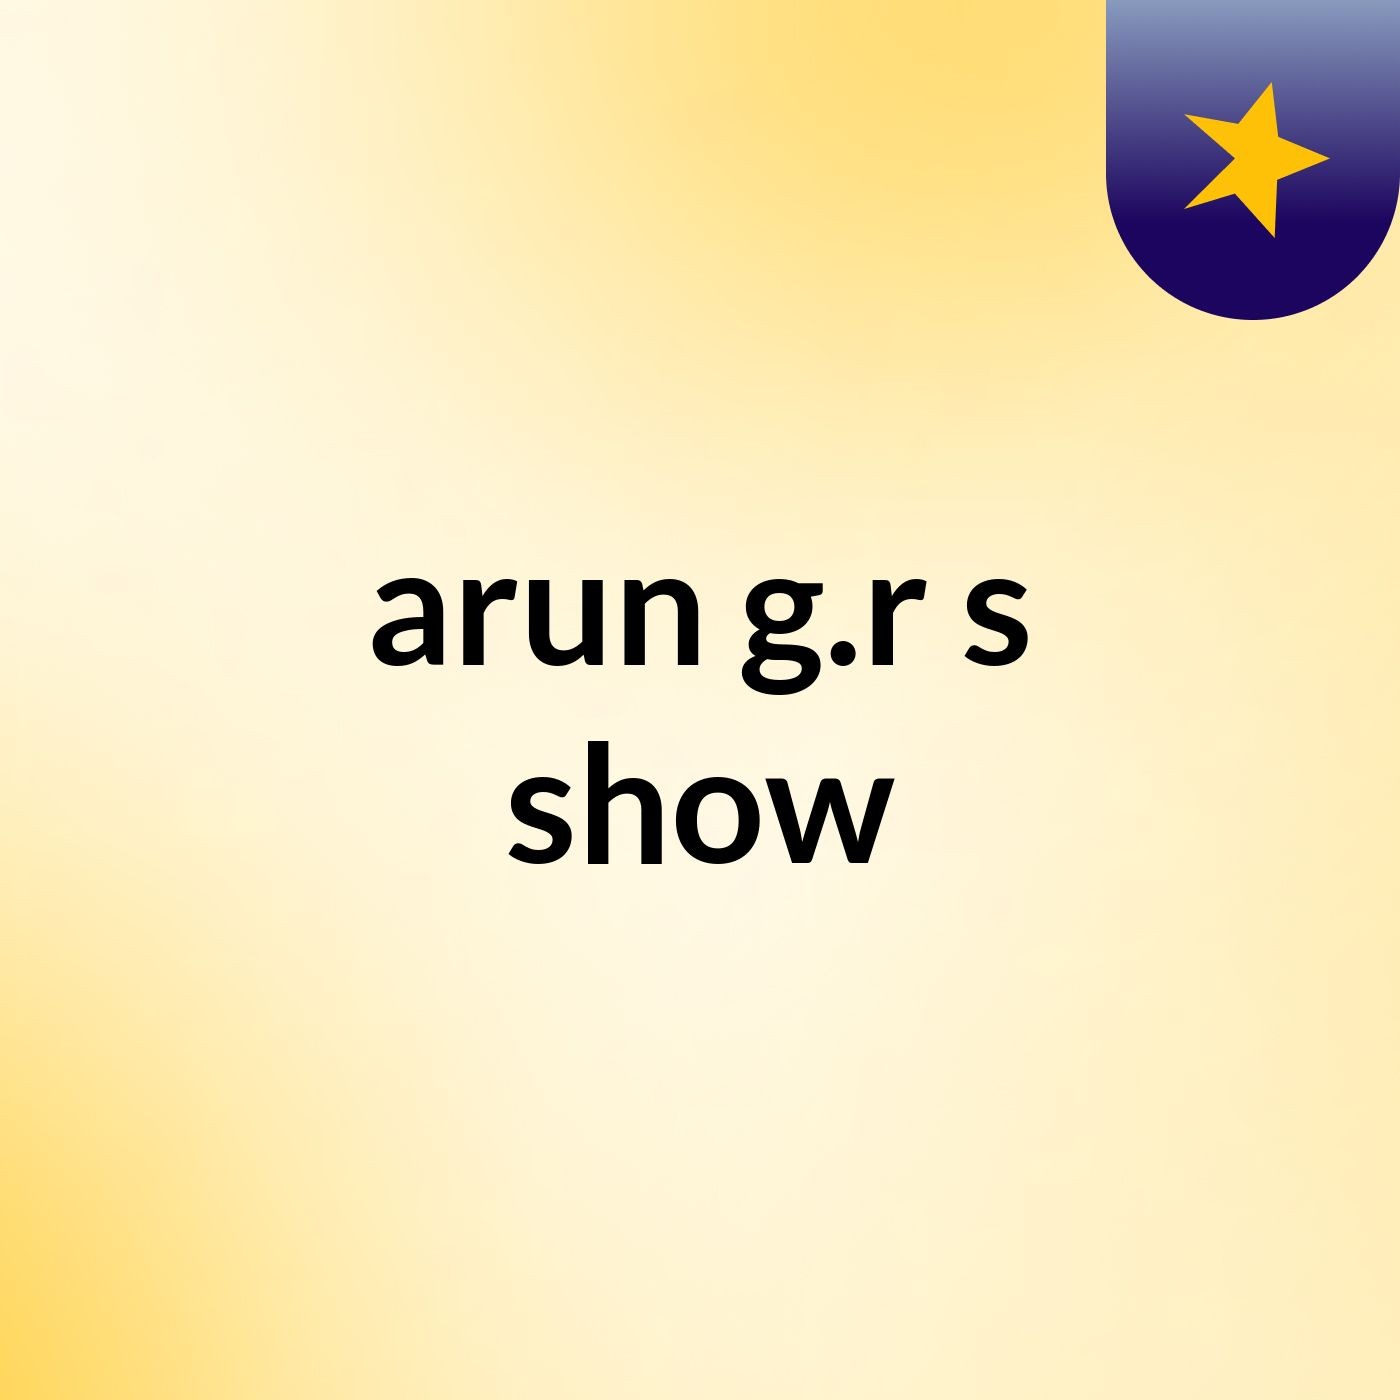 arun g.r's show